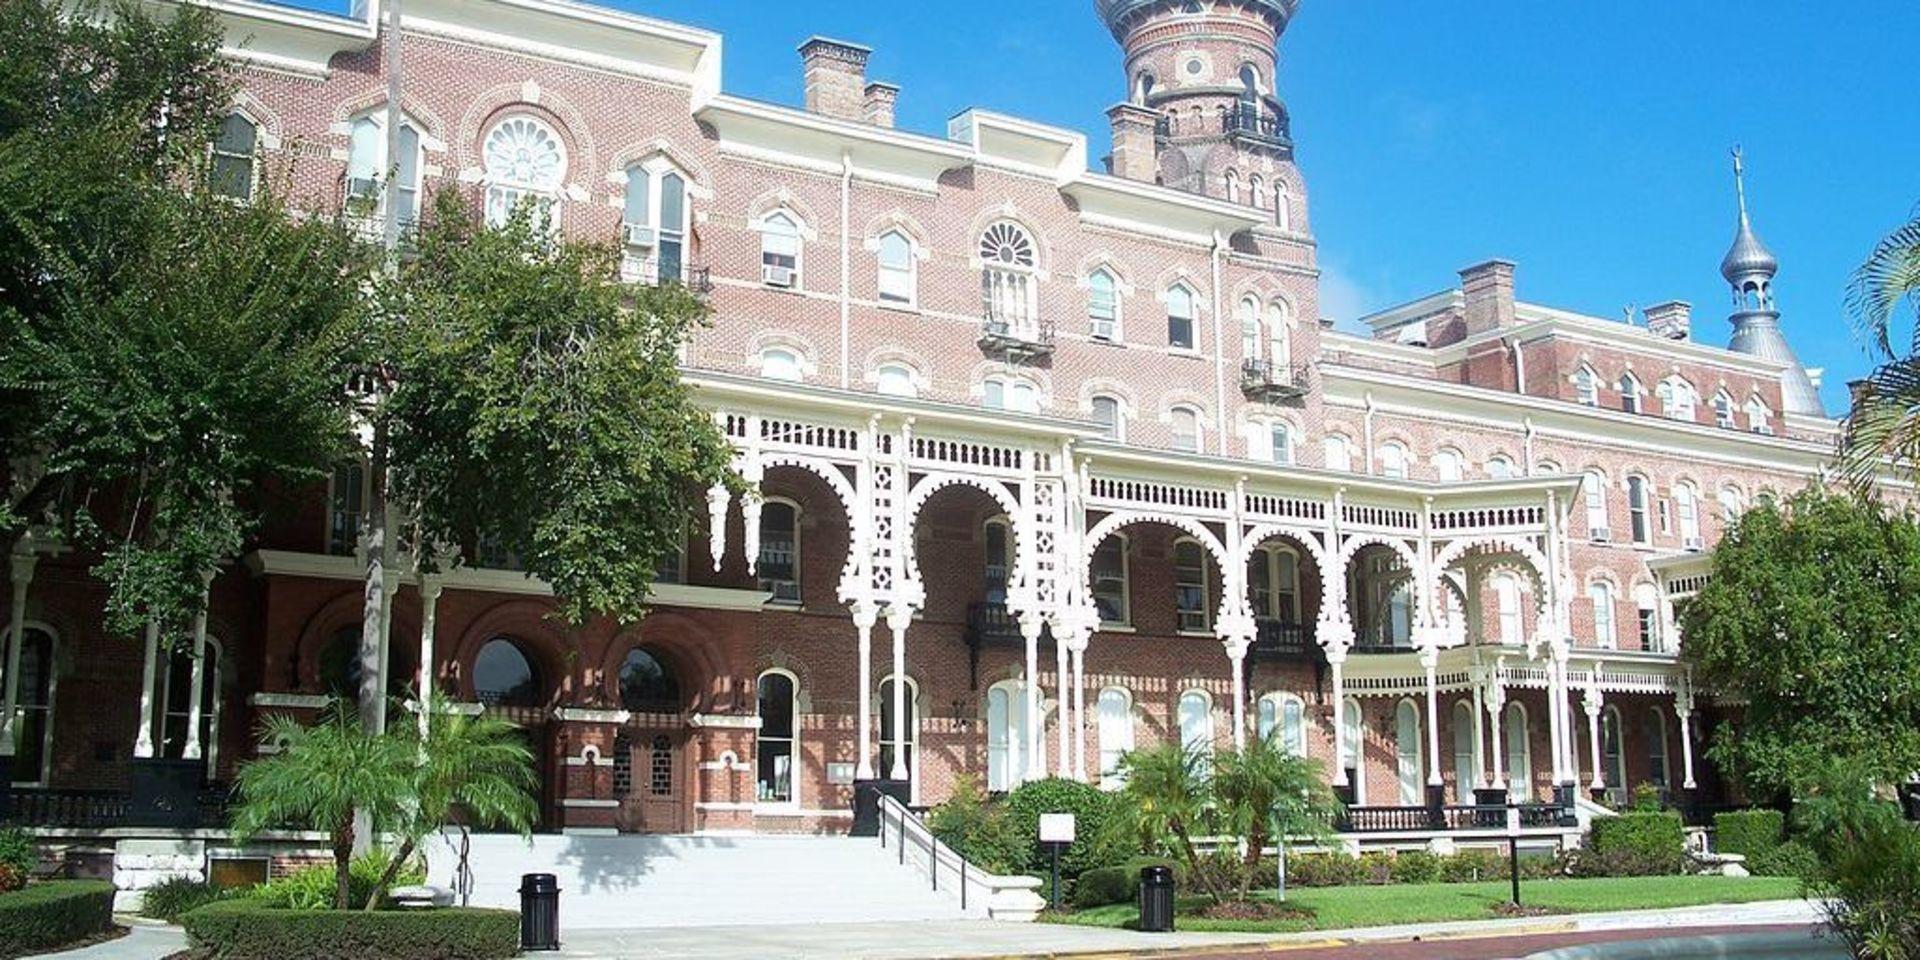 Tampa Bay Hotel är i dag museum och universitet